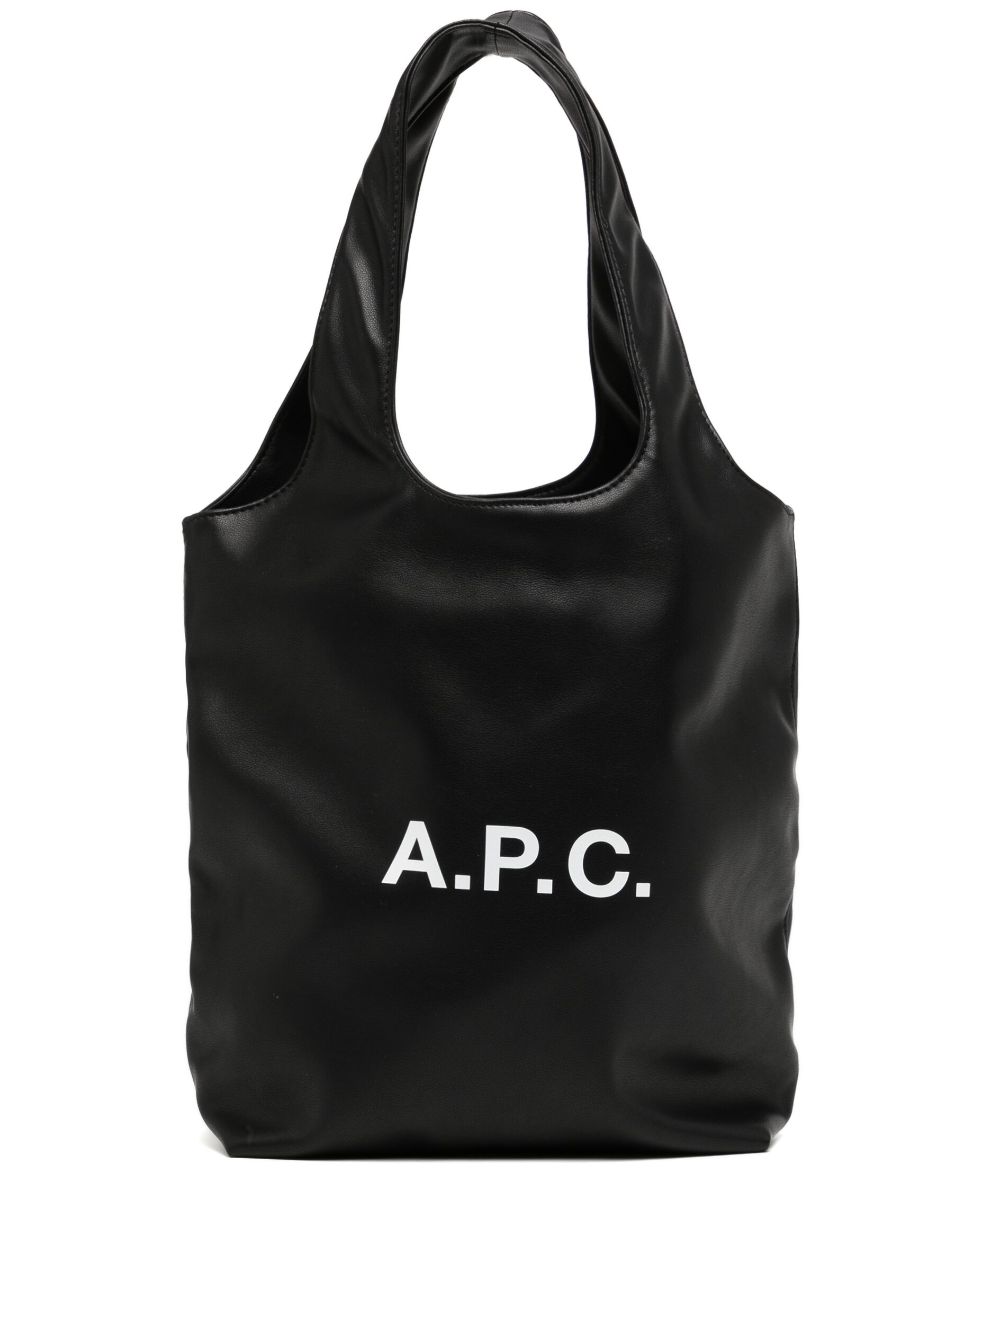 A.P.C. NINON SMALL TOTE BAG